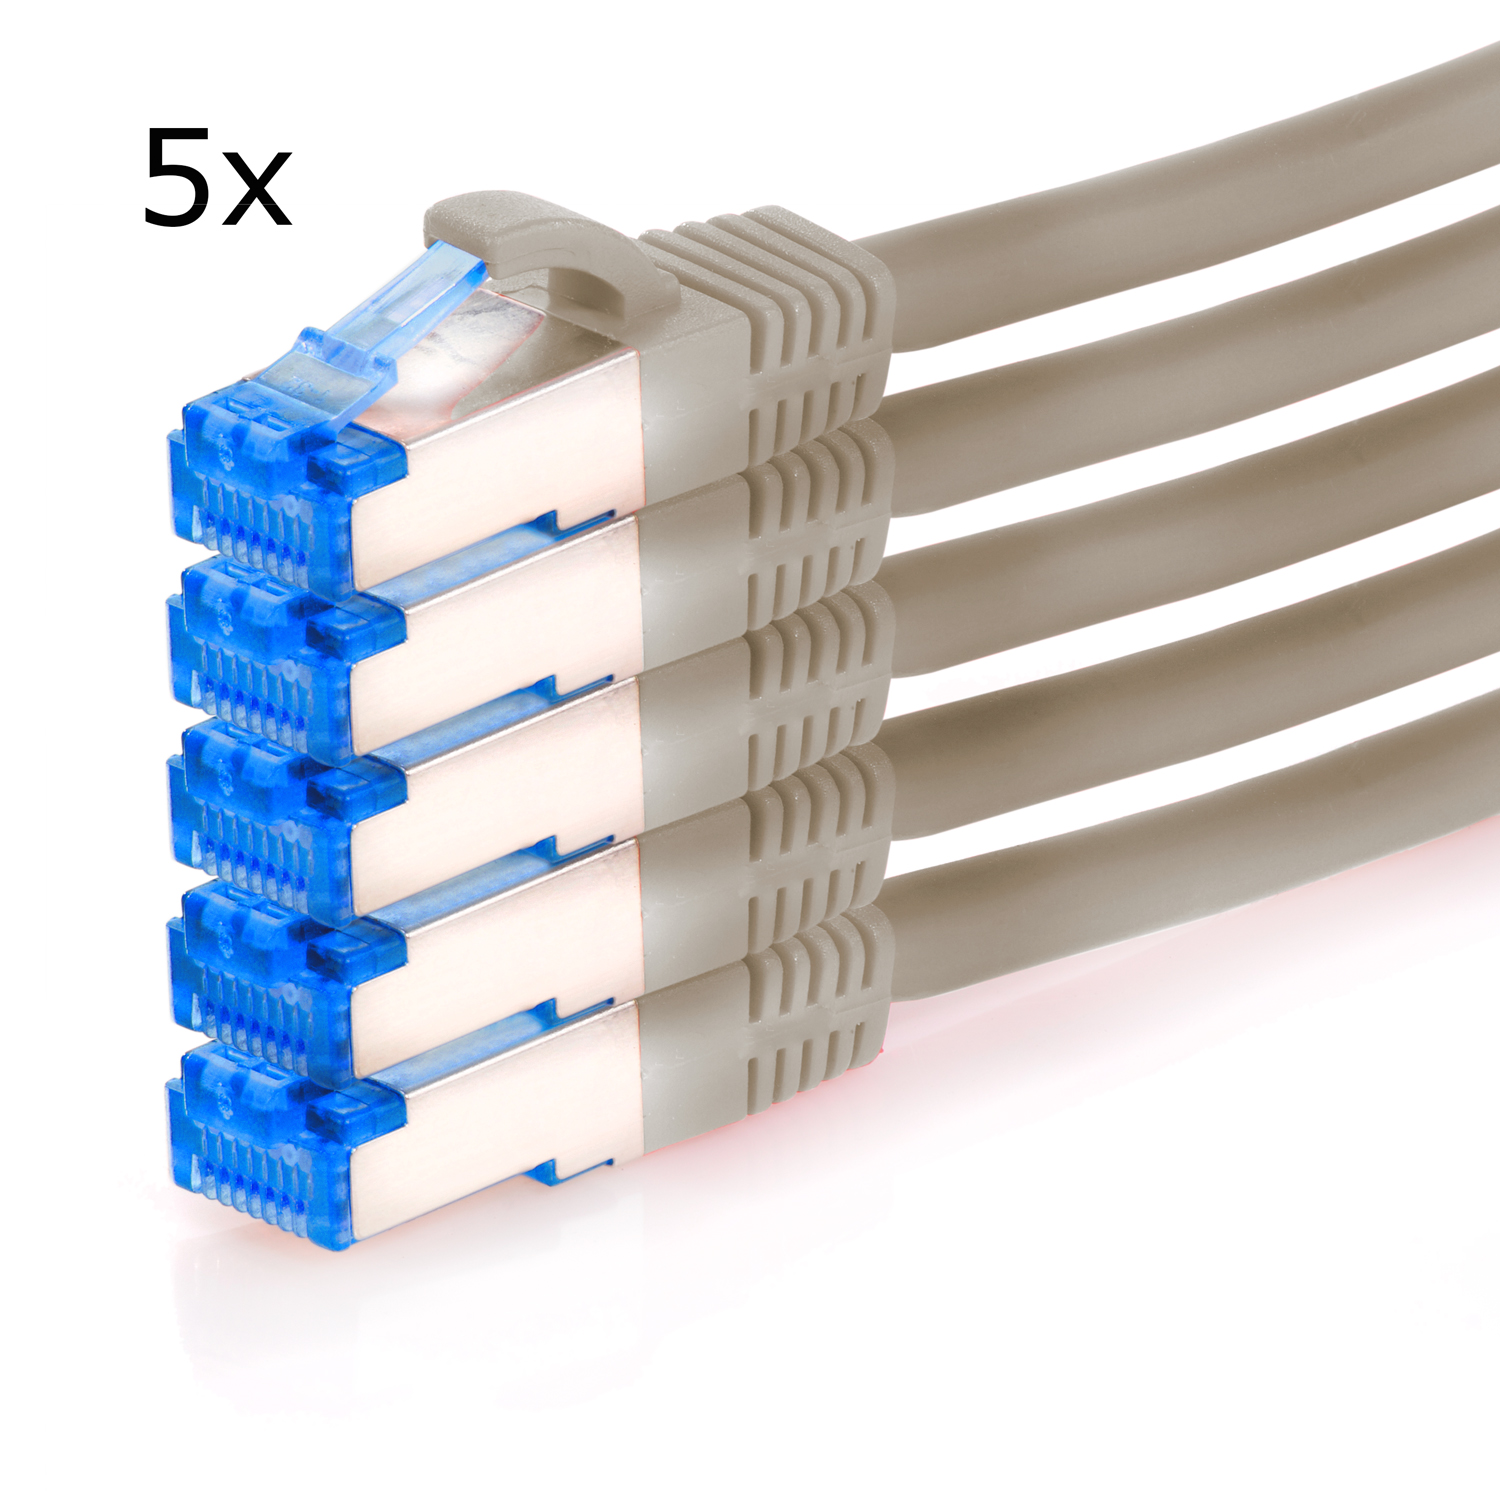 TPFNET 5er Pack 1,5m Patchkabel 10GBit, Netzwerkkabel, m 1,5 S/FTP Netzwerkkabel / grau